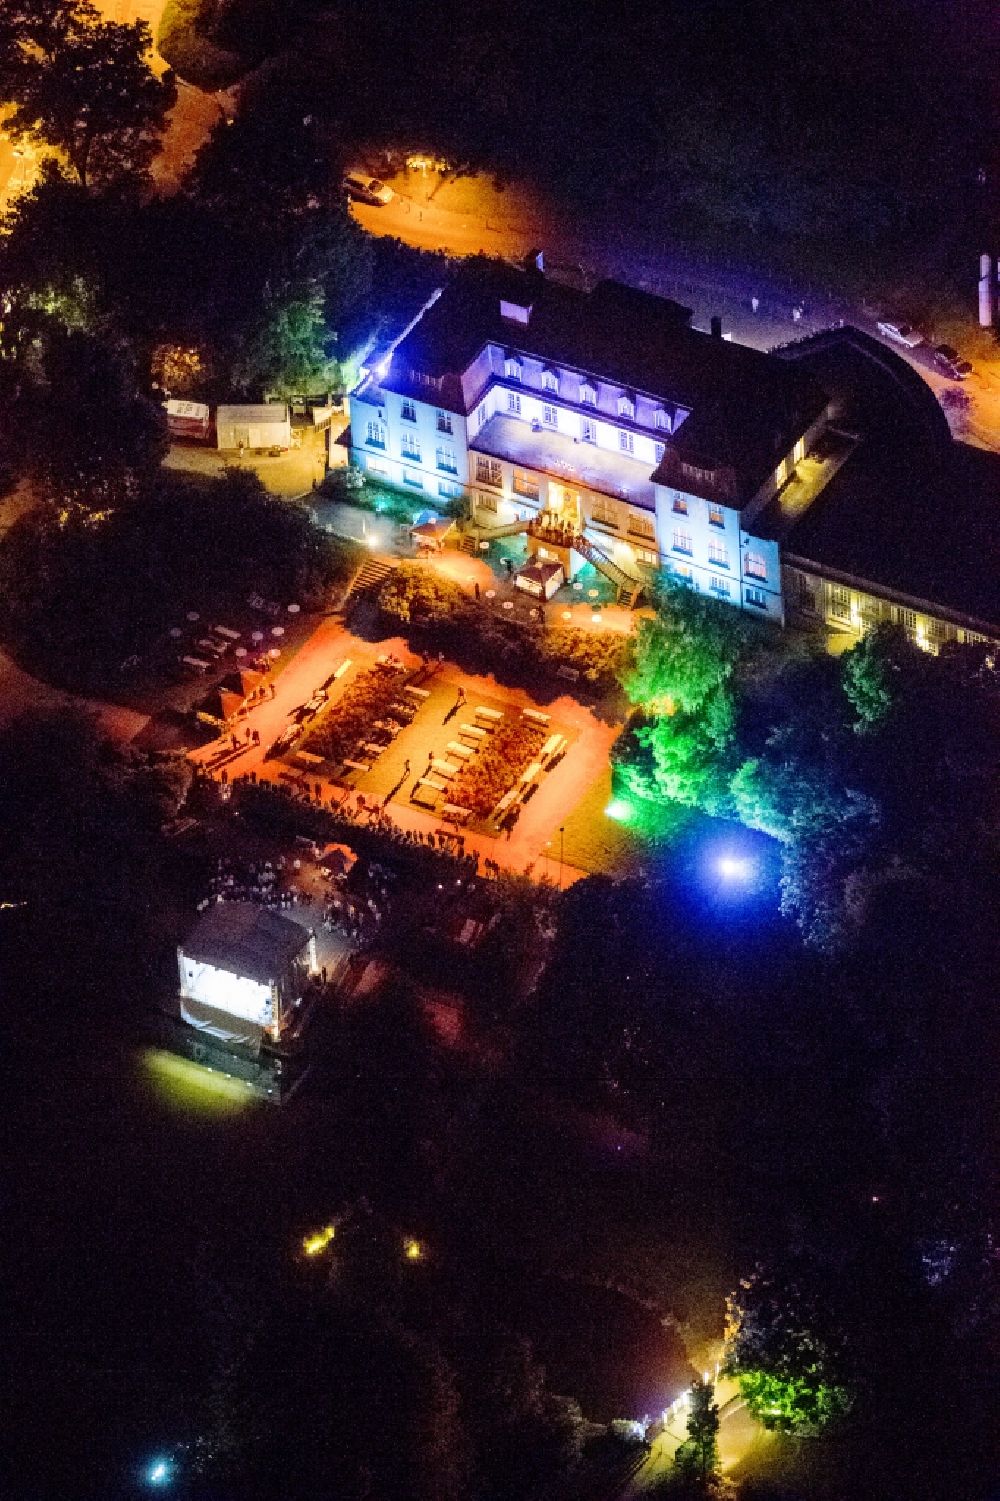 Mühlheim bei Nacht aus der Vogelperspektive: Nacht- Luftbild vom Theater an der Ruhr in Mühlheim im Rahmen der Aktion Extraschicht 2012